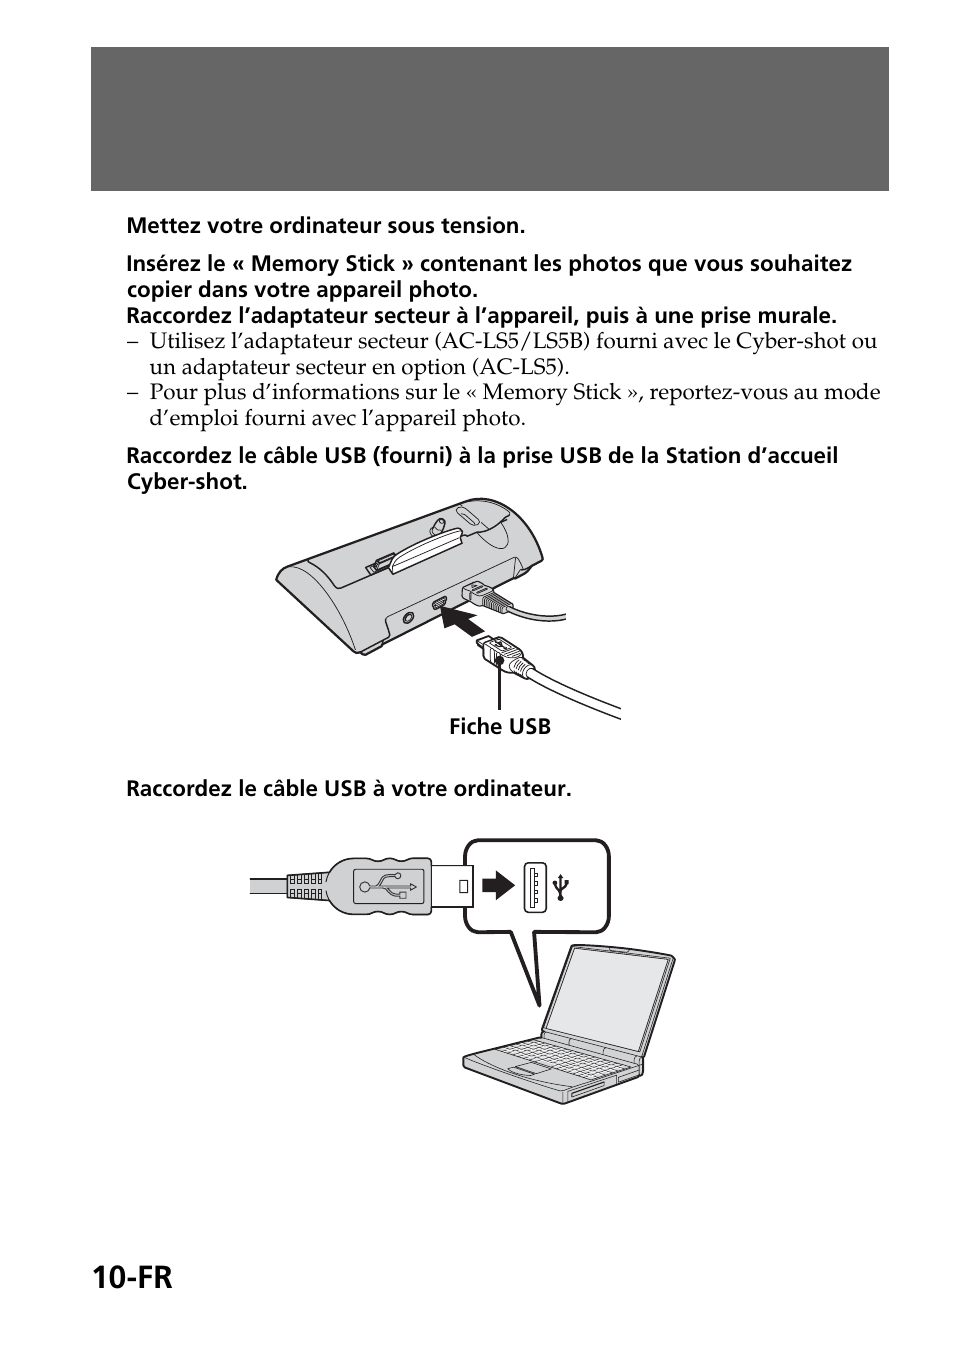 La station d’accueil cyber-shot | Sony CSS-FEB Manuel d'utilisation | Page 34 / 52